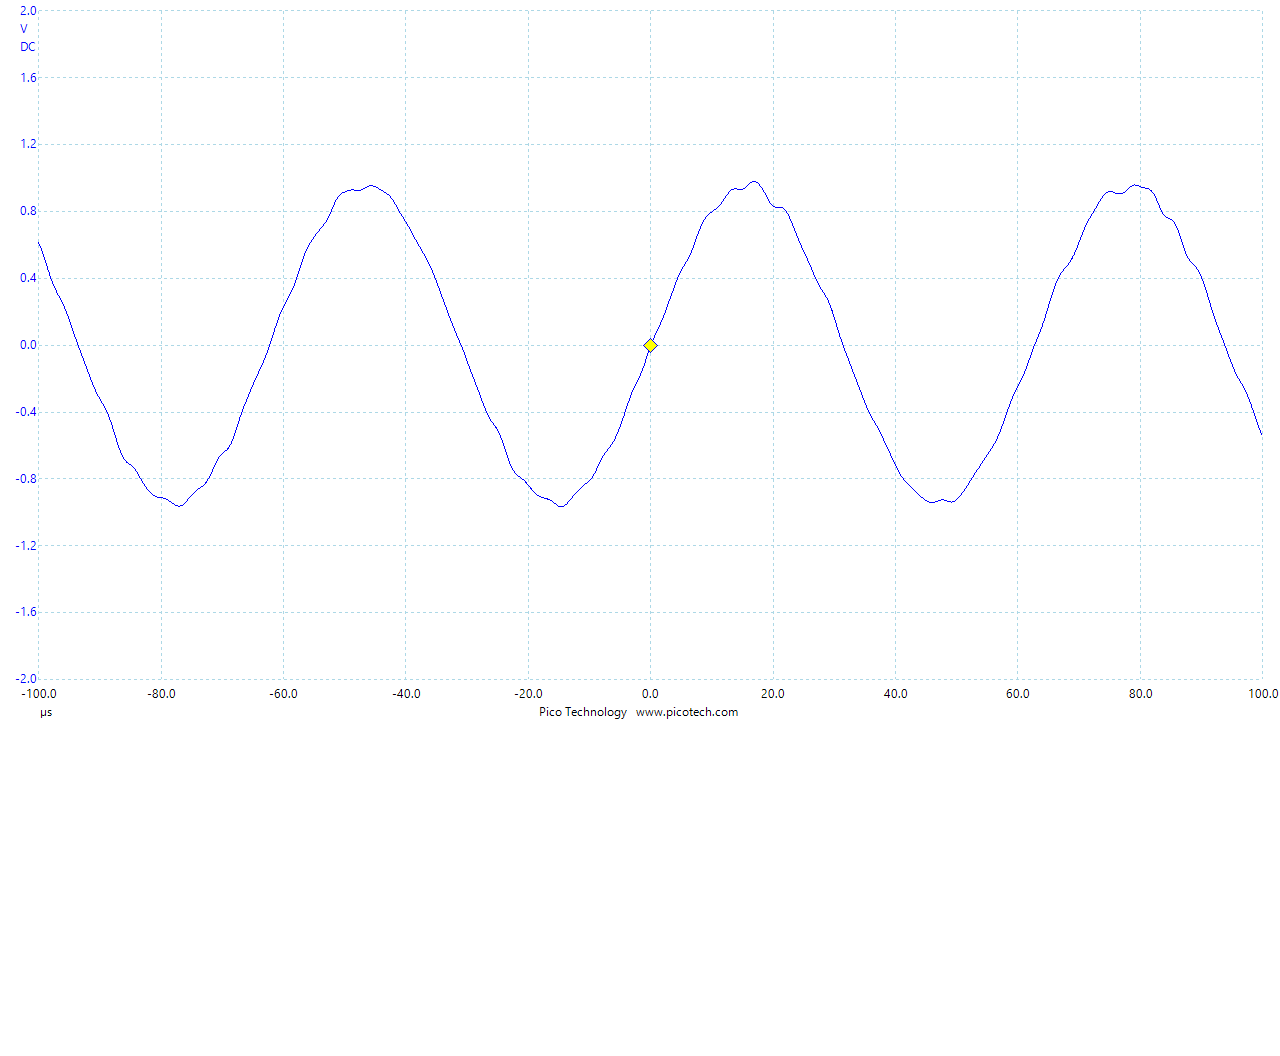 Waveform of the ouput (16kHz sine wave)